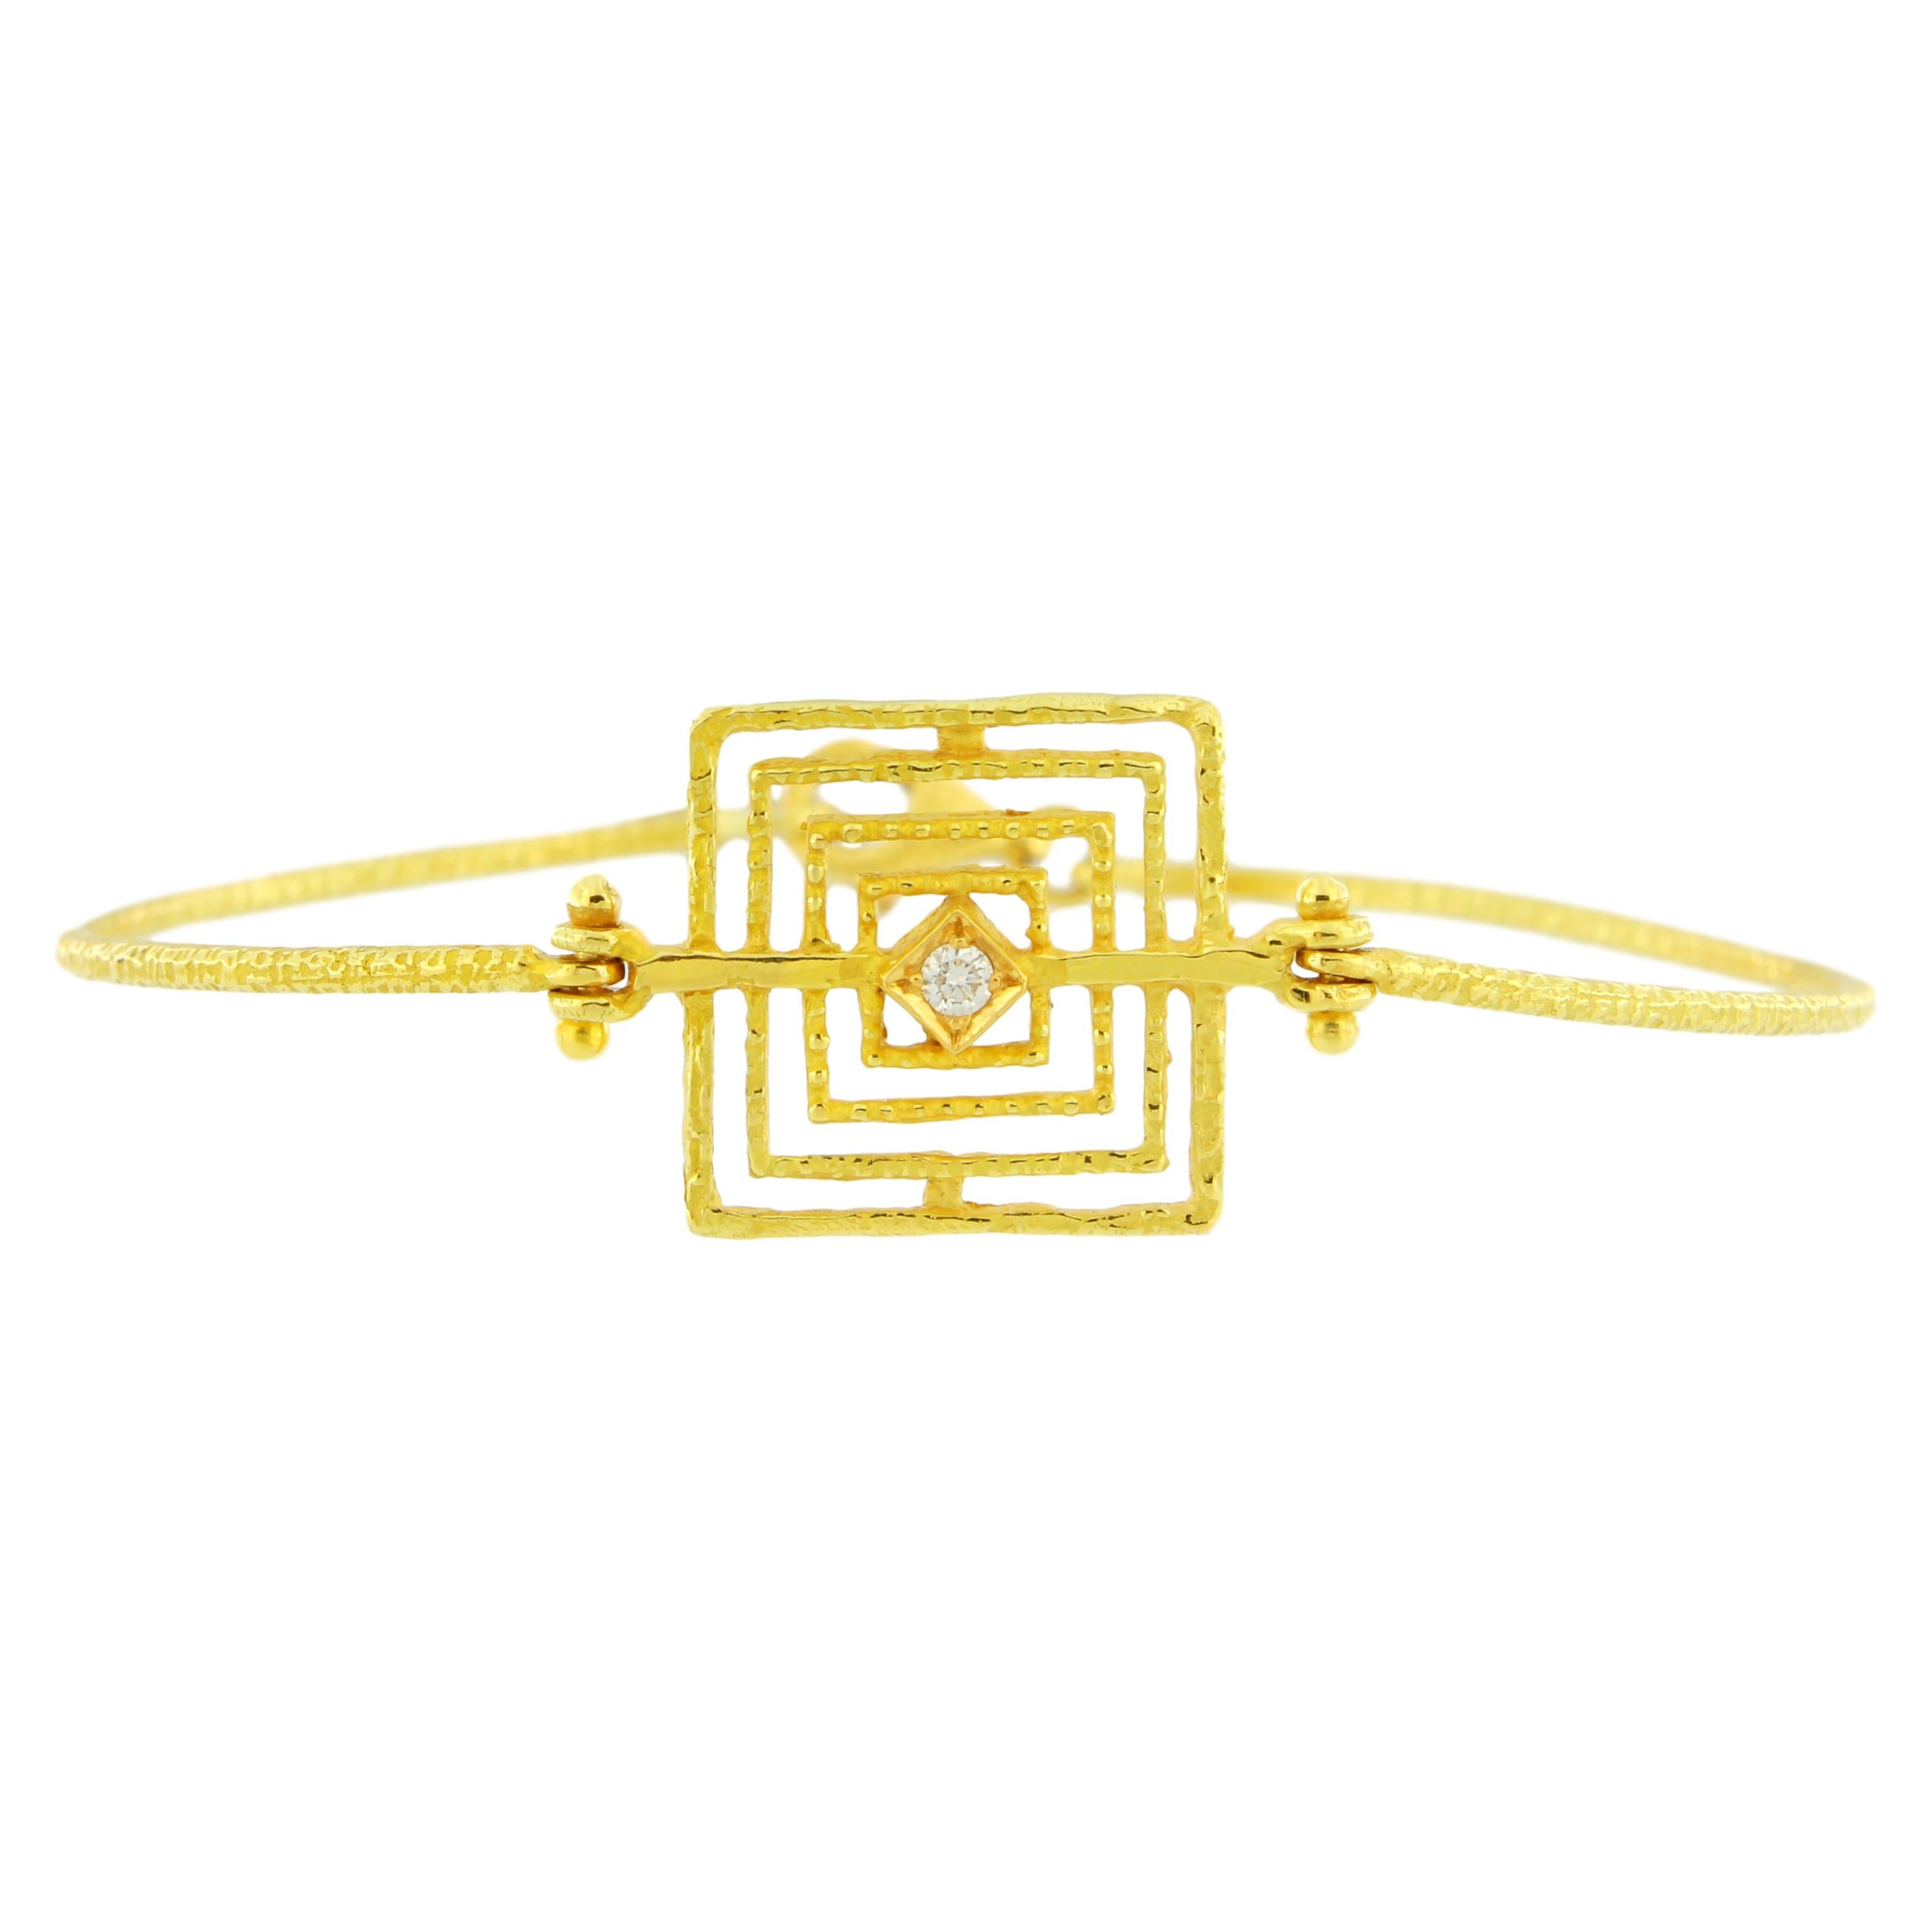 Bracelet géométrique en or jaune satiné 18 carats, fabriqué à la main selon la technique de la fonte à la cire perdue.

La fonte à la cire perdue, l'une des plus anciennes techniques de création de bijoux, constitue la base de la production de